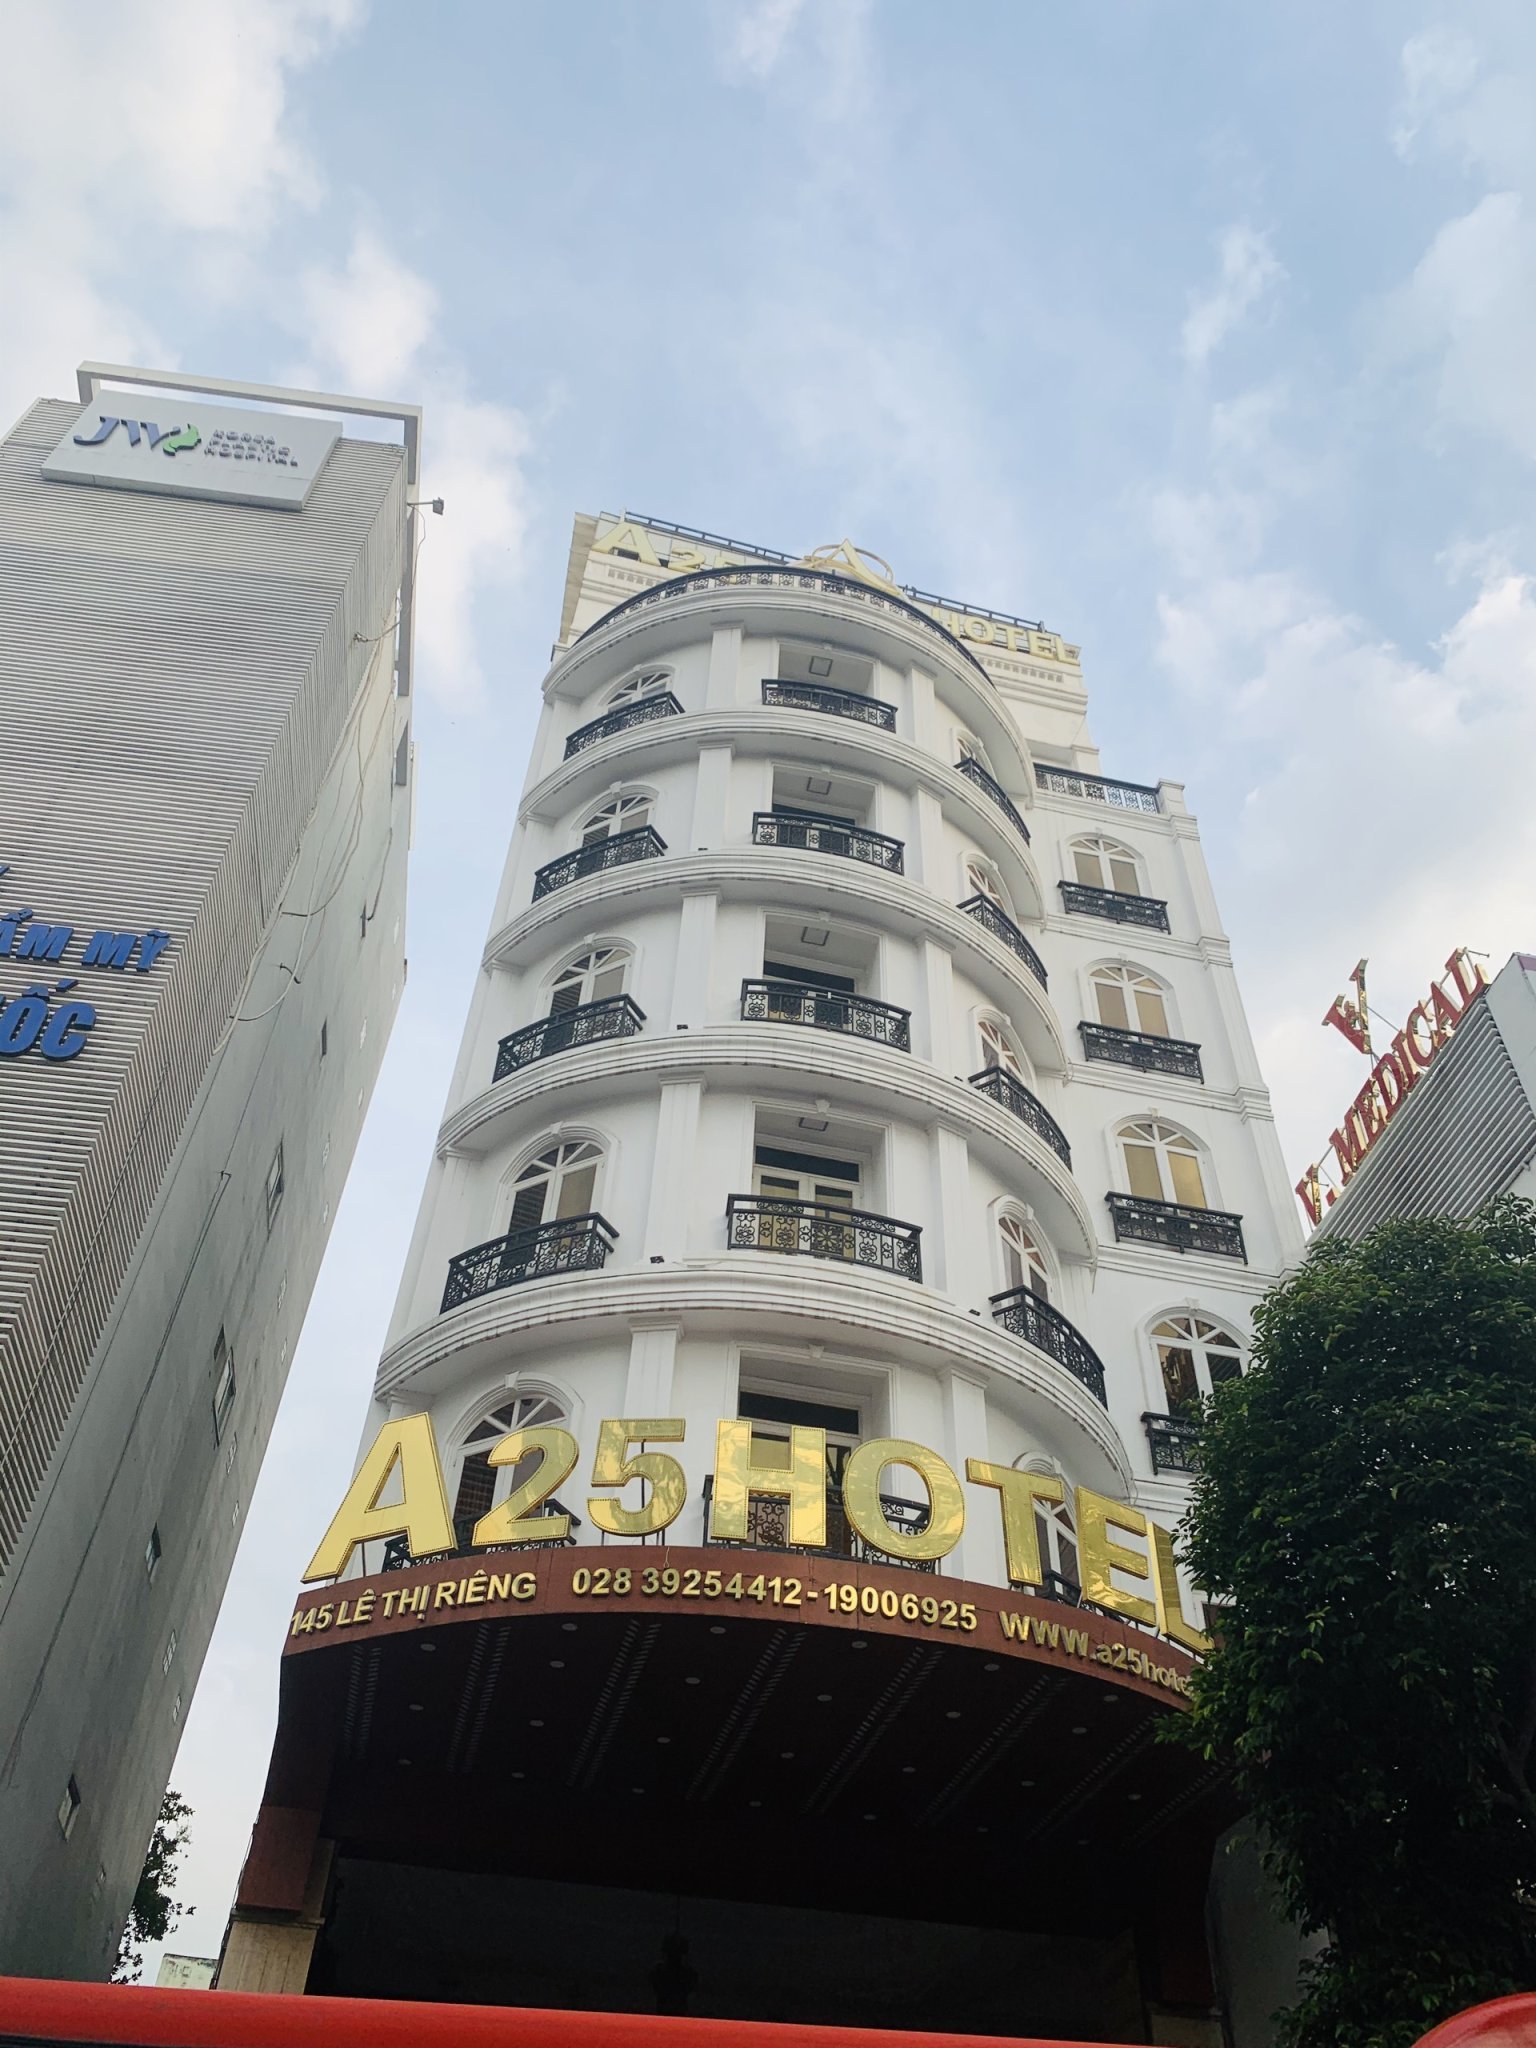 Bán tòa khách sạn A25 Hotel đường Lê Thị Riêng trung tâm Quận 1. DT 13m x 24m, sẵn hầm lửng 7 lầu + ST giá chỉ 320 tỷ